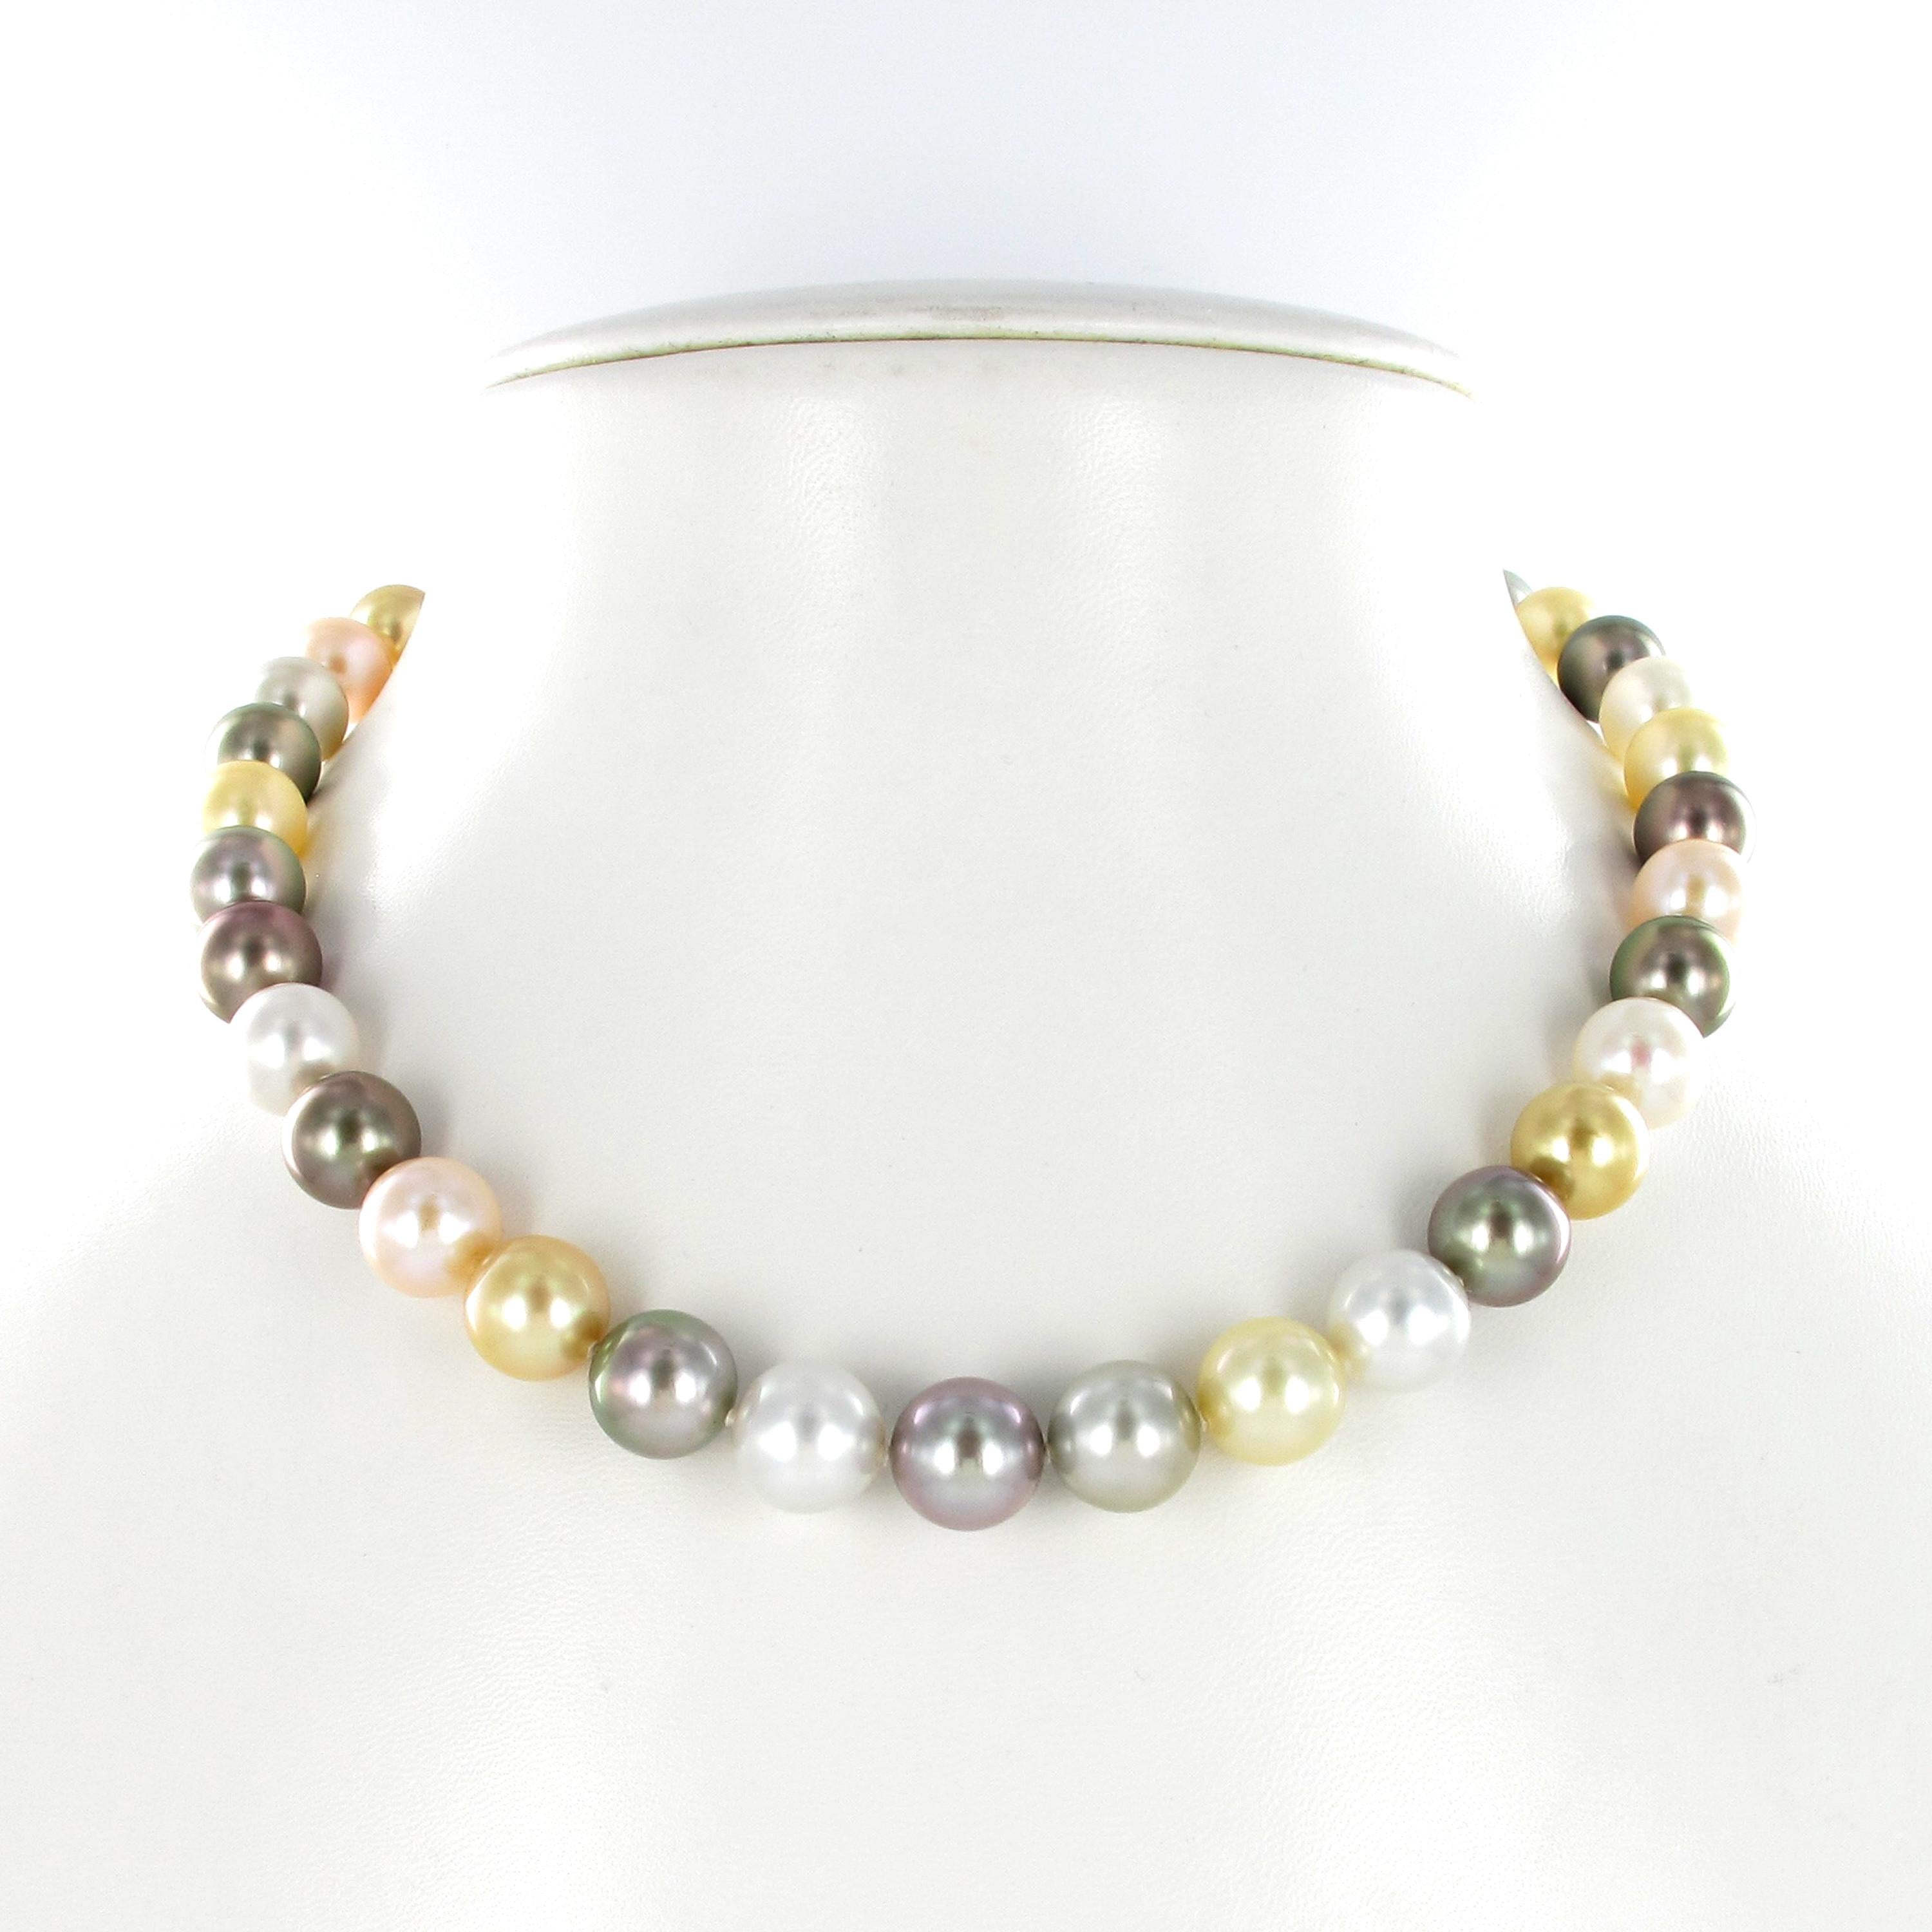 Ce collier coloré comporte 39 perles de culture rondes de Tahiti, des mers du Sud et d'eau douce, dont la taille varie de 9,7 mm à 11,9 mm. Avec un fermoir à baïonnette/tube élégamment dissimulé en or jaune 18 carats.

Les perles sont de forme